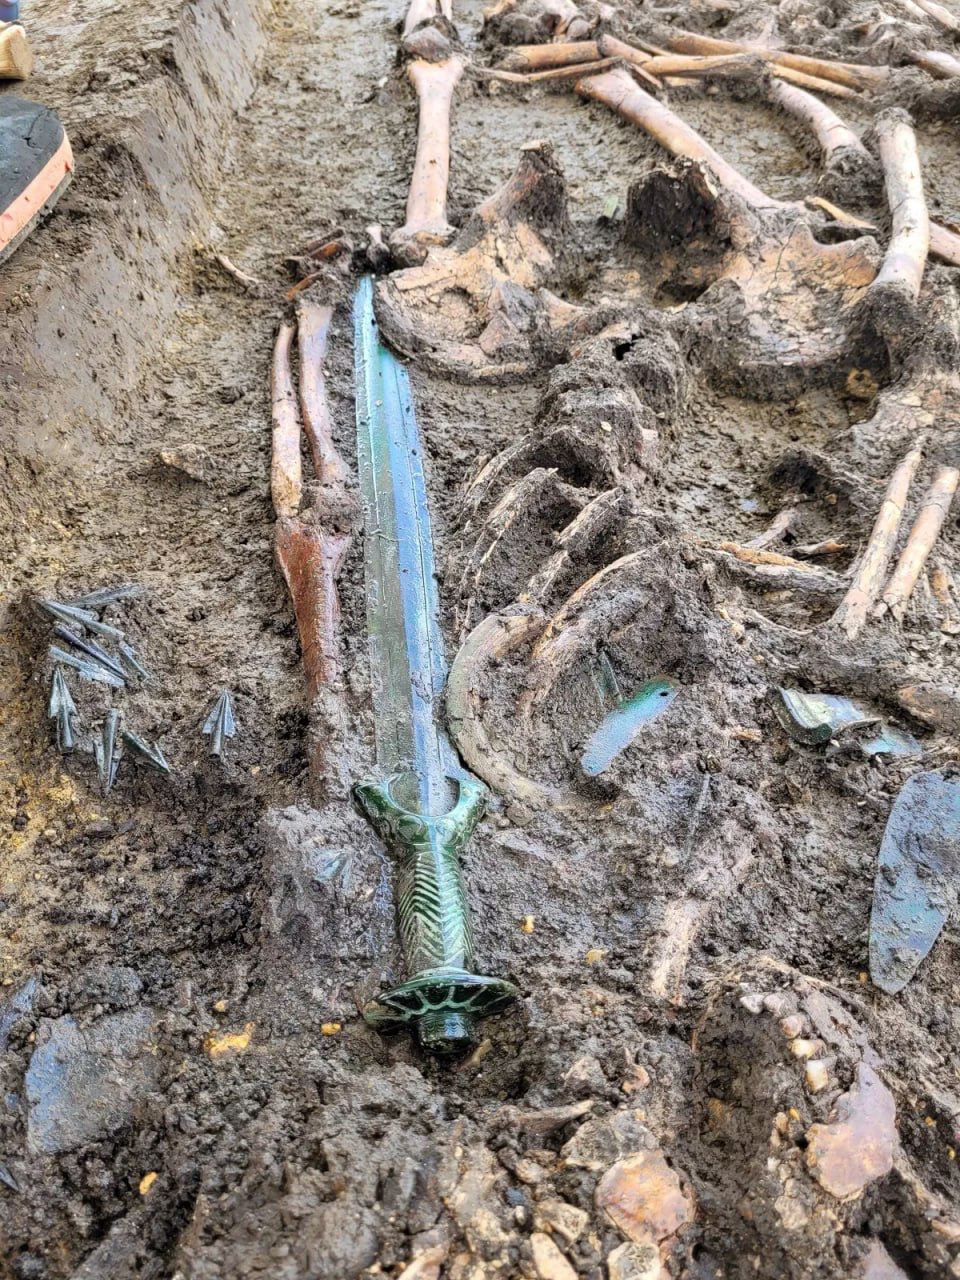 Немецкие археологи нашли бронзовый меч